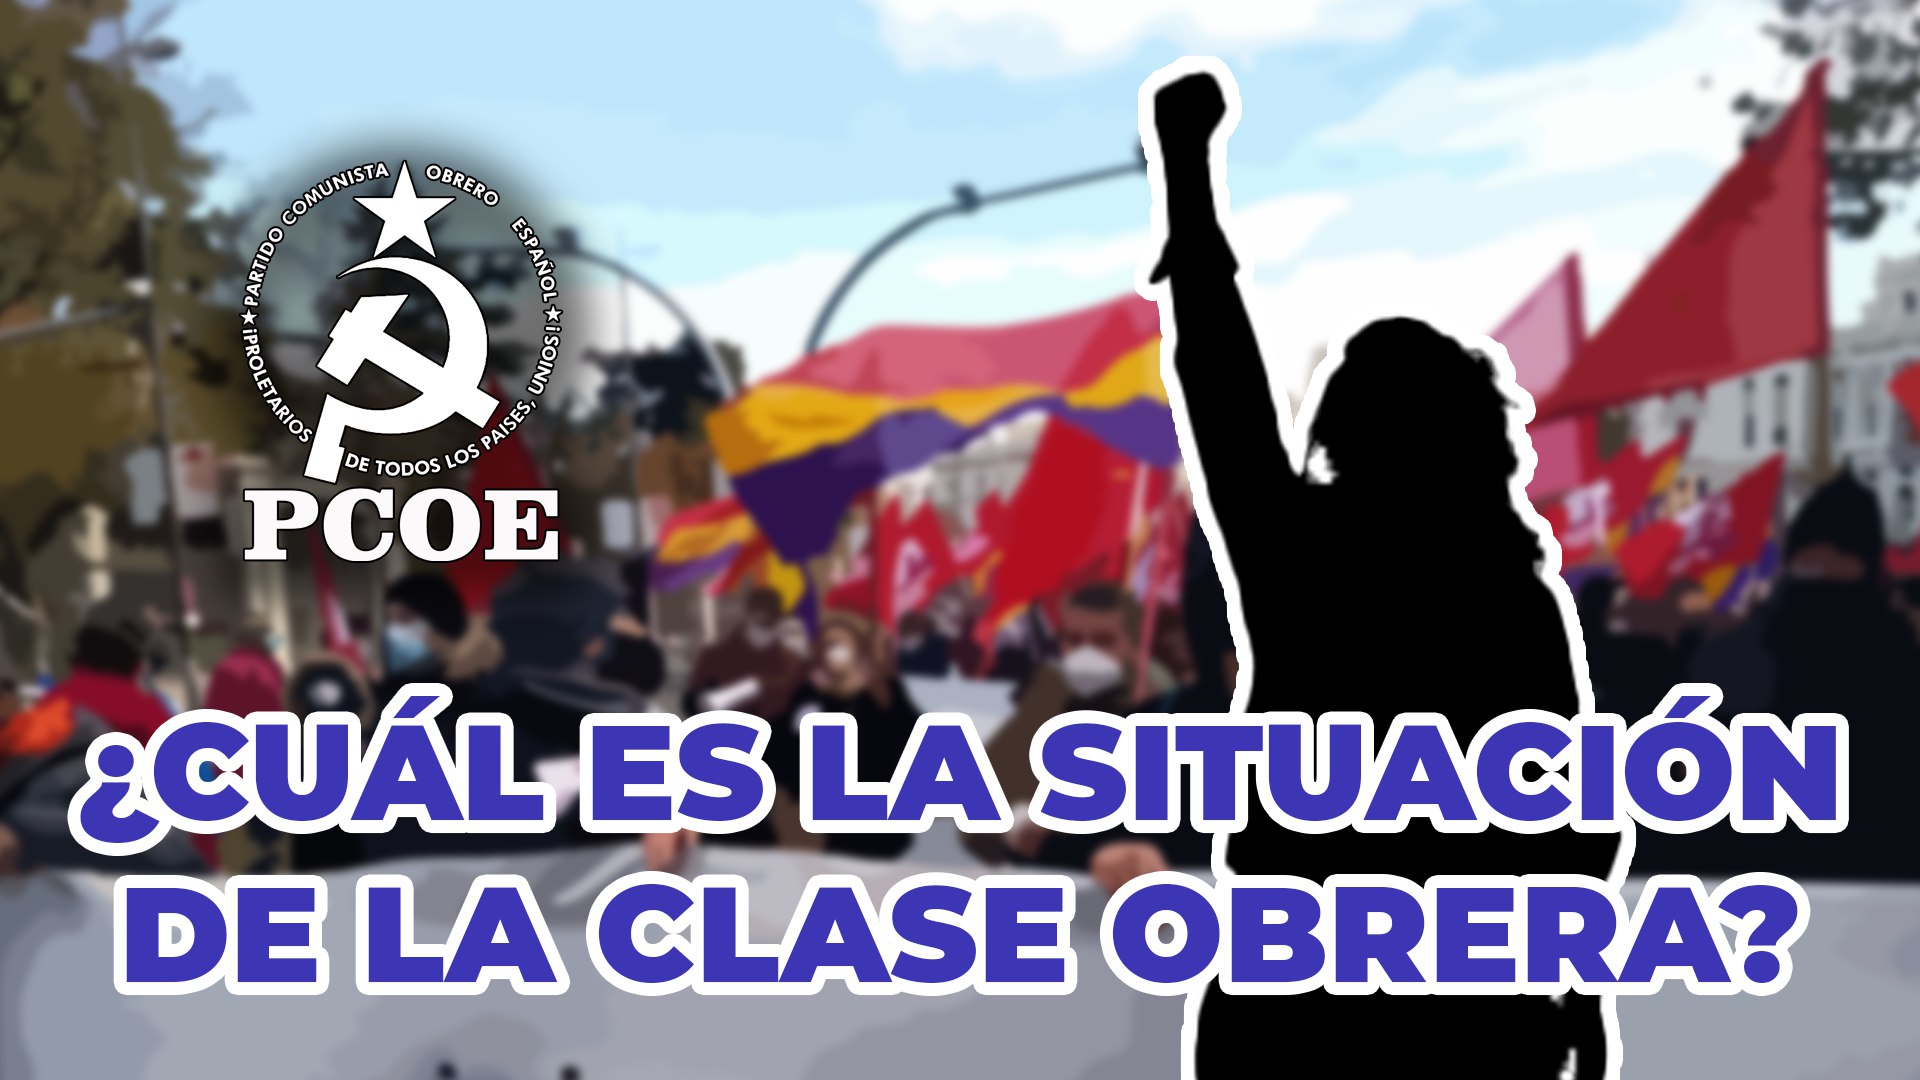 El pasado 13 de noviembre el PCOE celebró un acto público en el cual se trató la situación que vive la clase trabajadora de Sevilla y del mundo. En dicho…